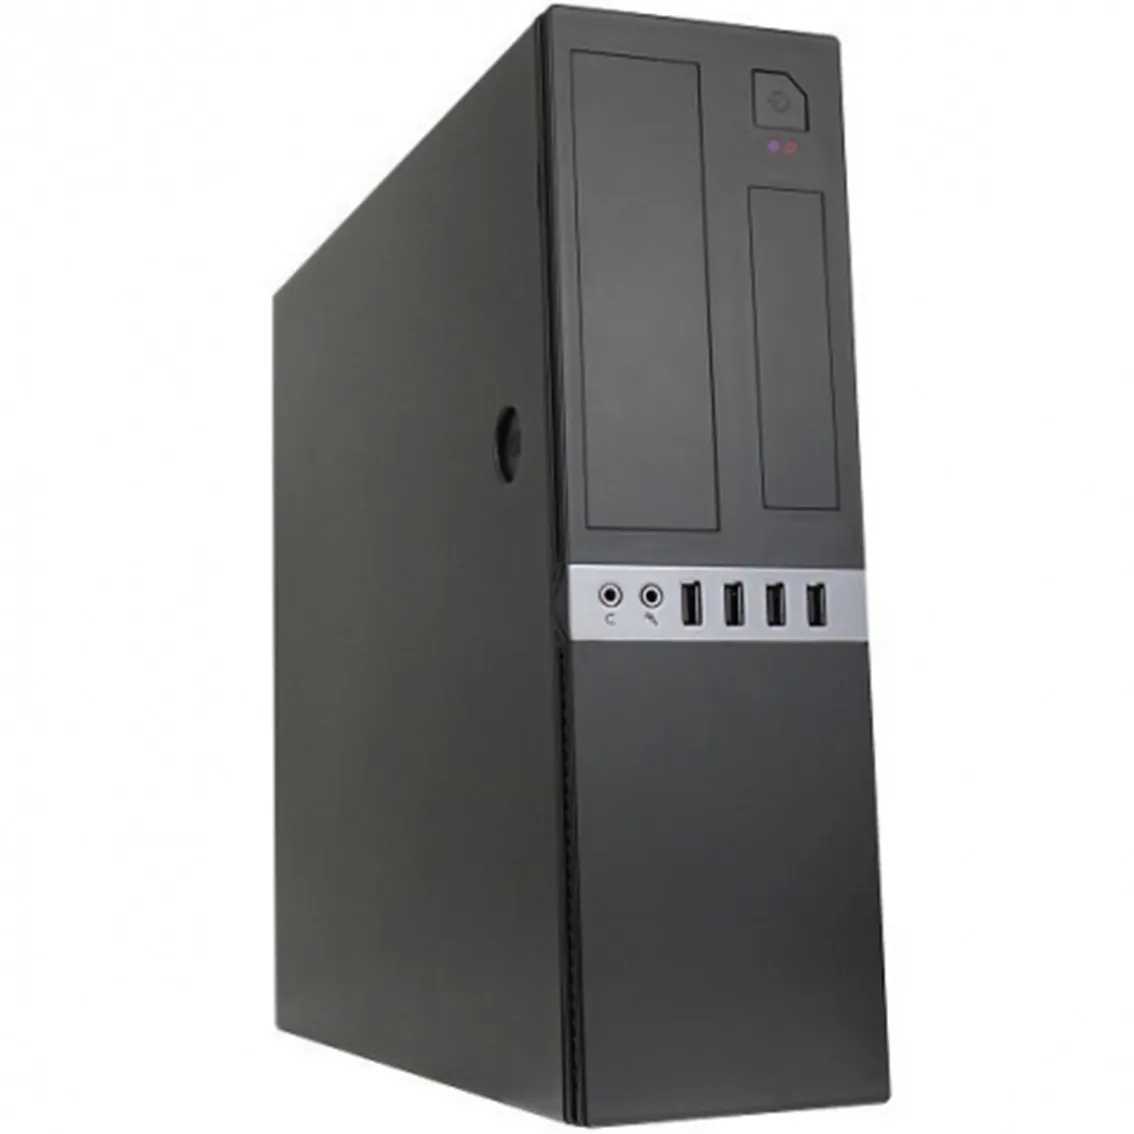 Caja ordenador sobremesa coolbox microatx slim t450s usb 3.0 fuente sfx 80+ 300 incluida